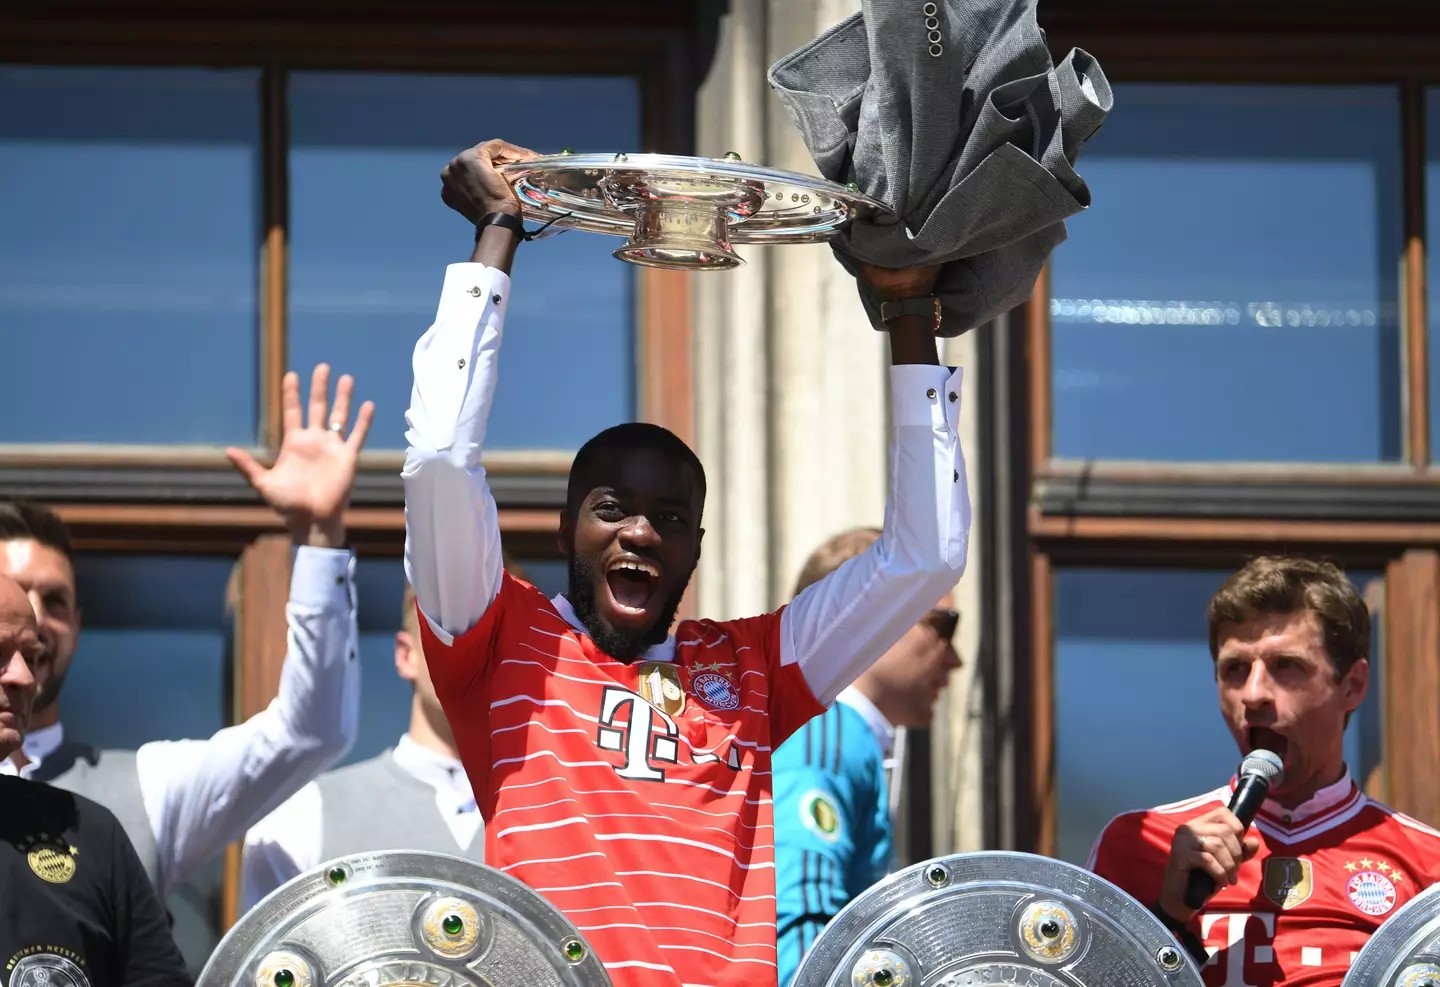 Dayot Upamecano won the Bundesliga at Bayern Munich last season. (Alamy)